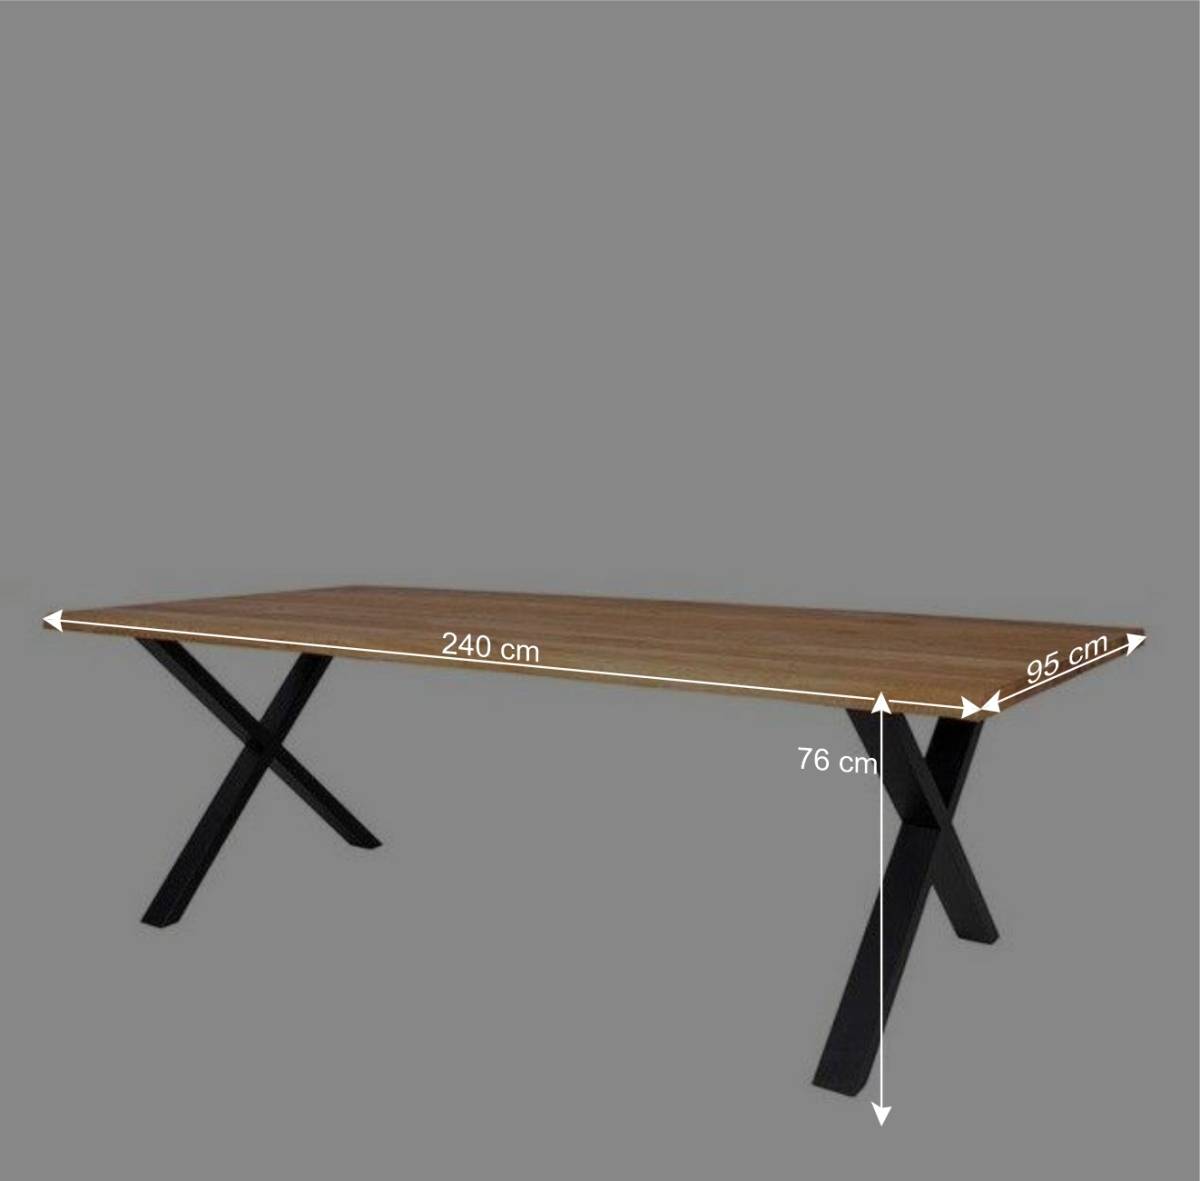 240x95 Esstisch mit X Füßen aus Stahl - Malawi